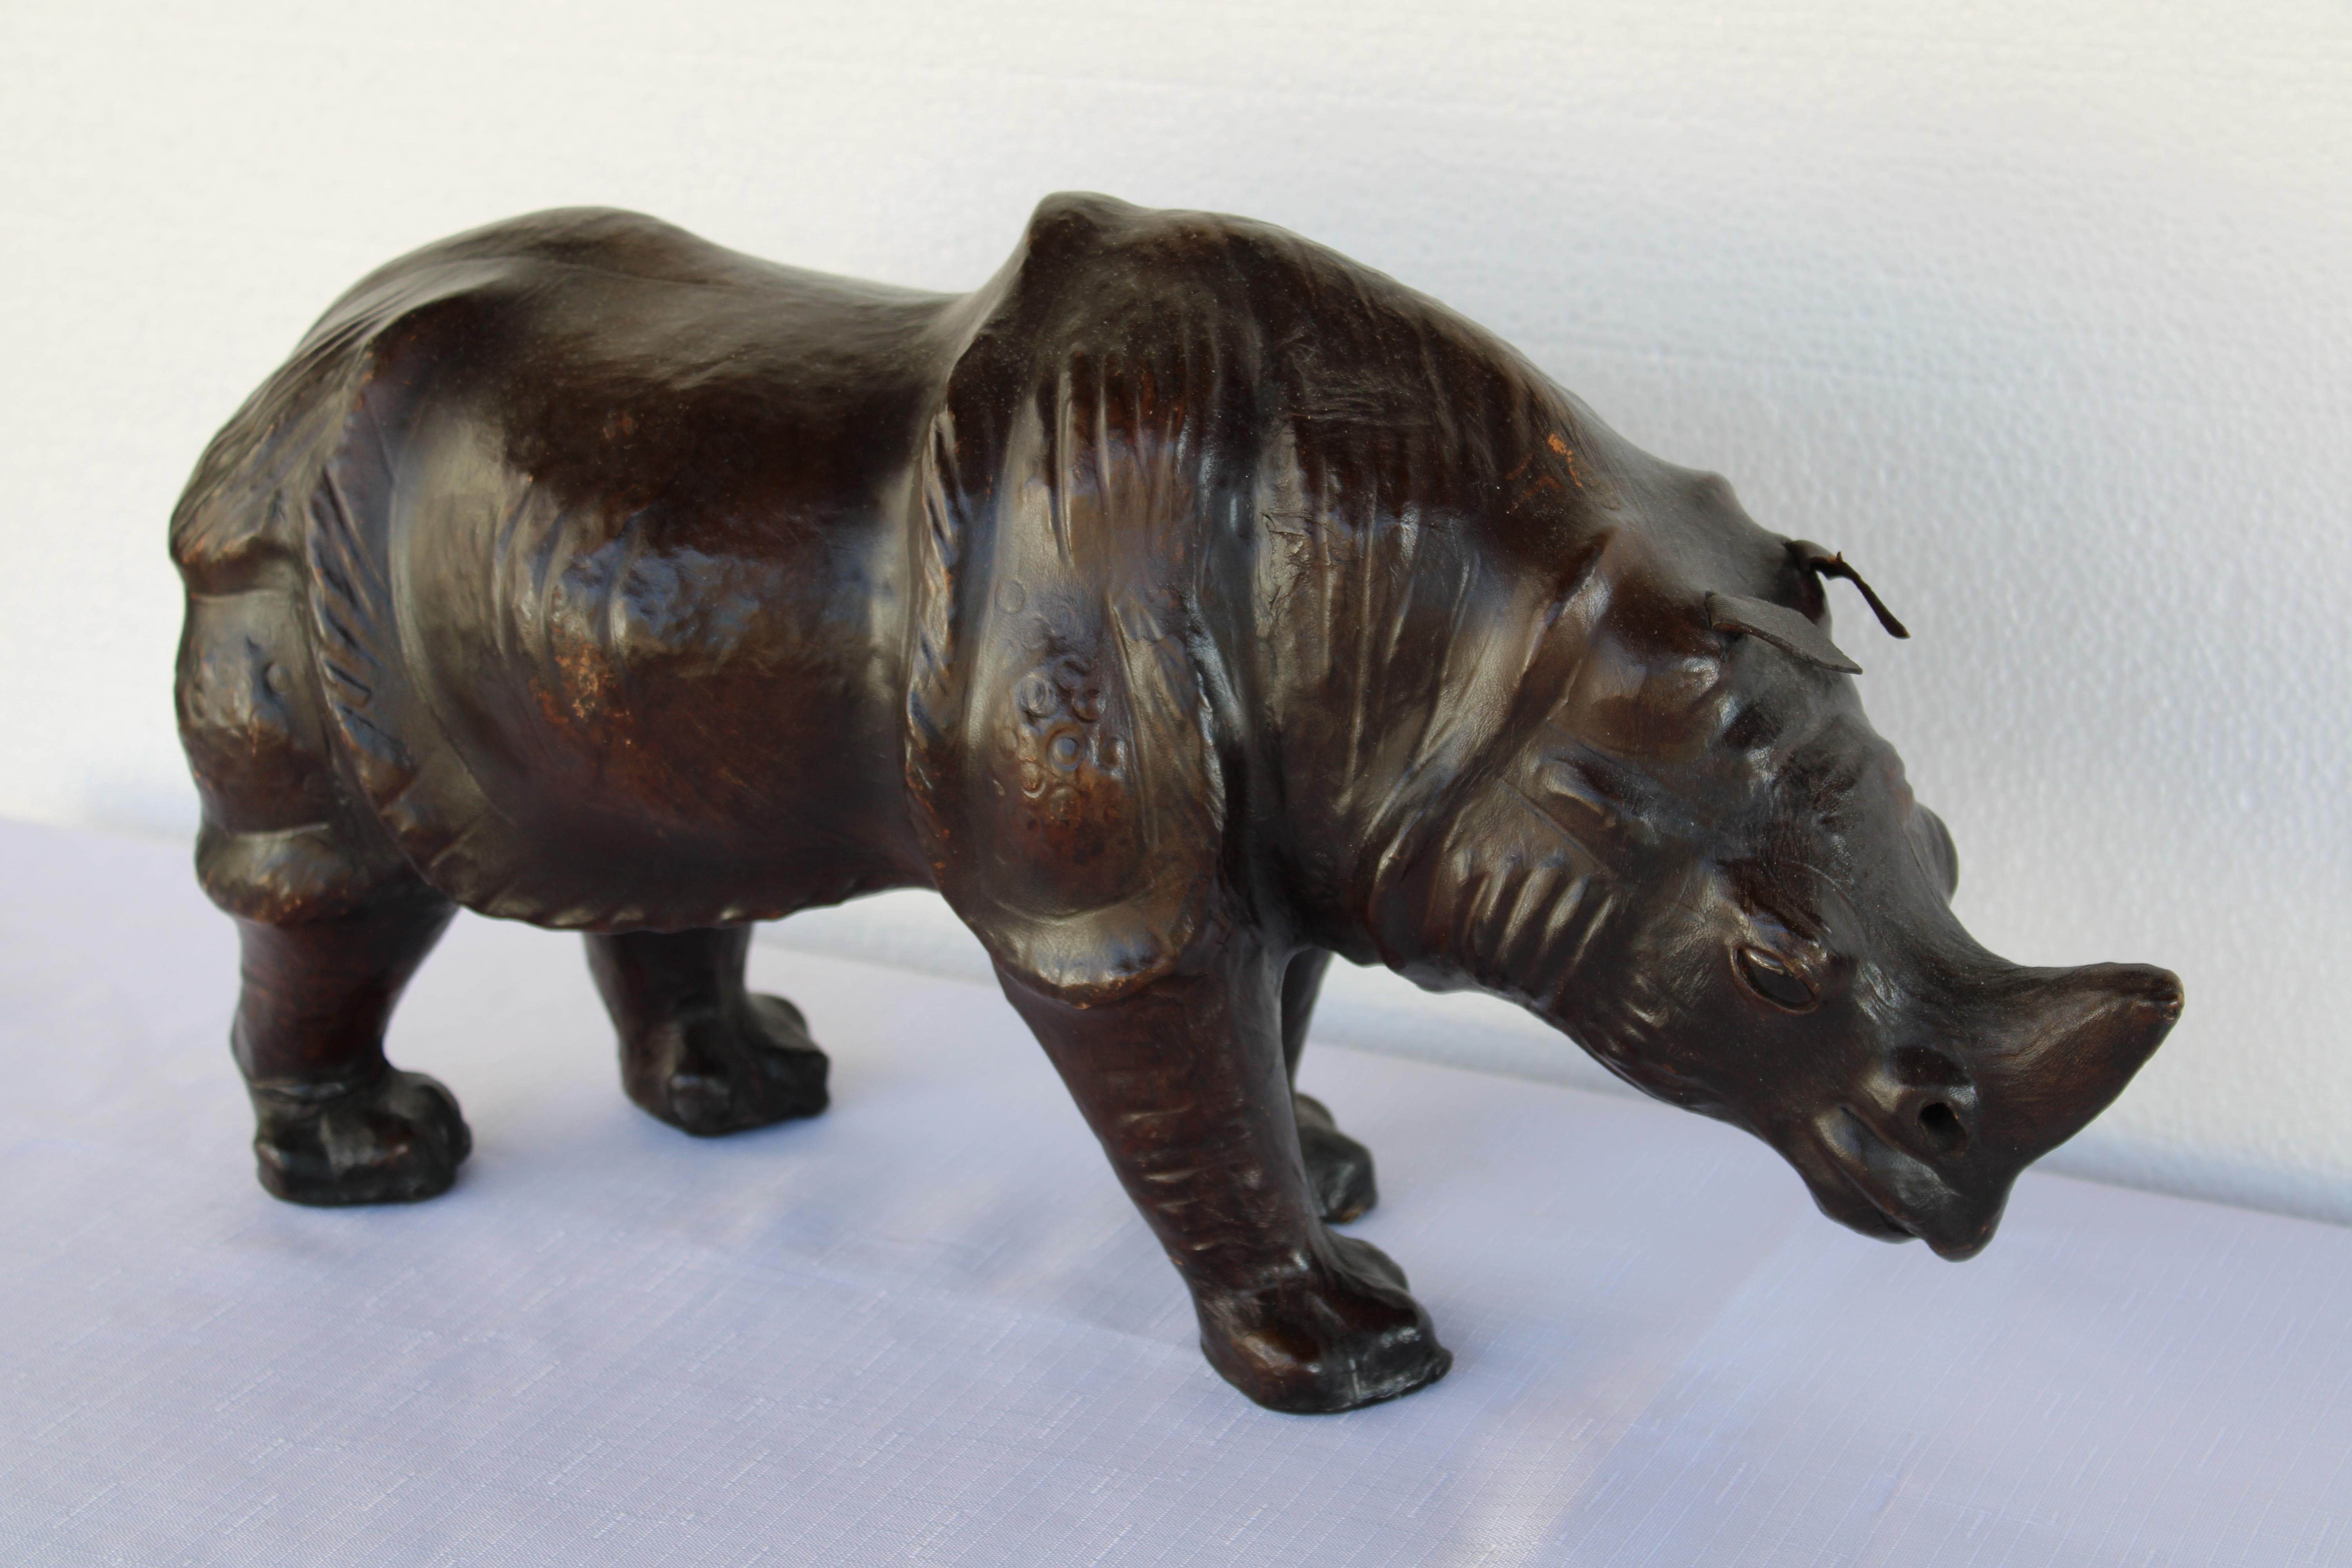 Incroyable Rhinocéros en cuir marron massif dans le style d'Abercrombie & Fitch et d'Omersa. La couleur et la patine sont excellentes et les yeux sont clairs. Le rhinocéros mesure 18,5